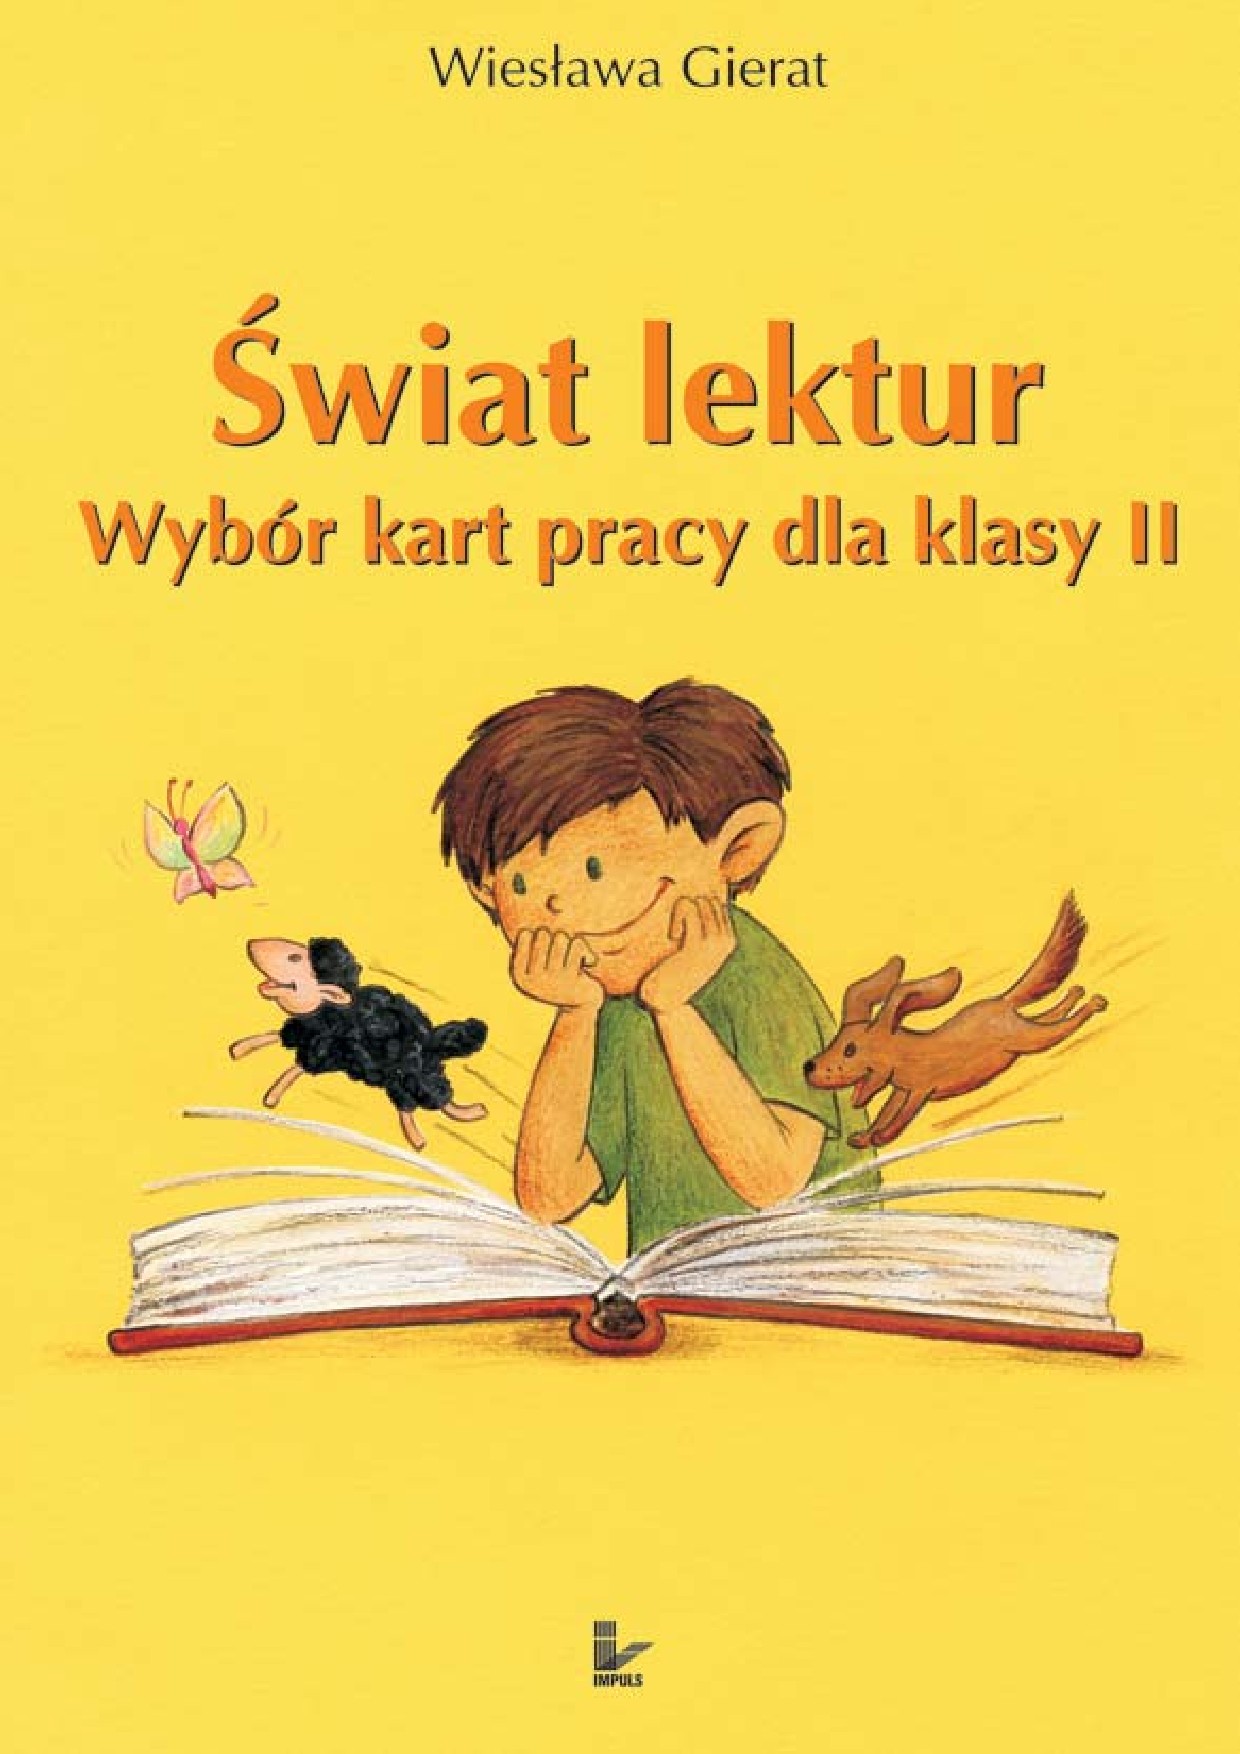 :: Świat lektur 2 - e-book ::